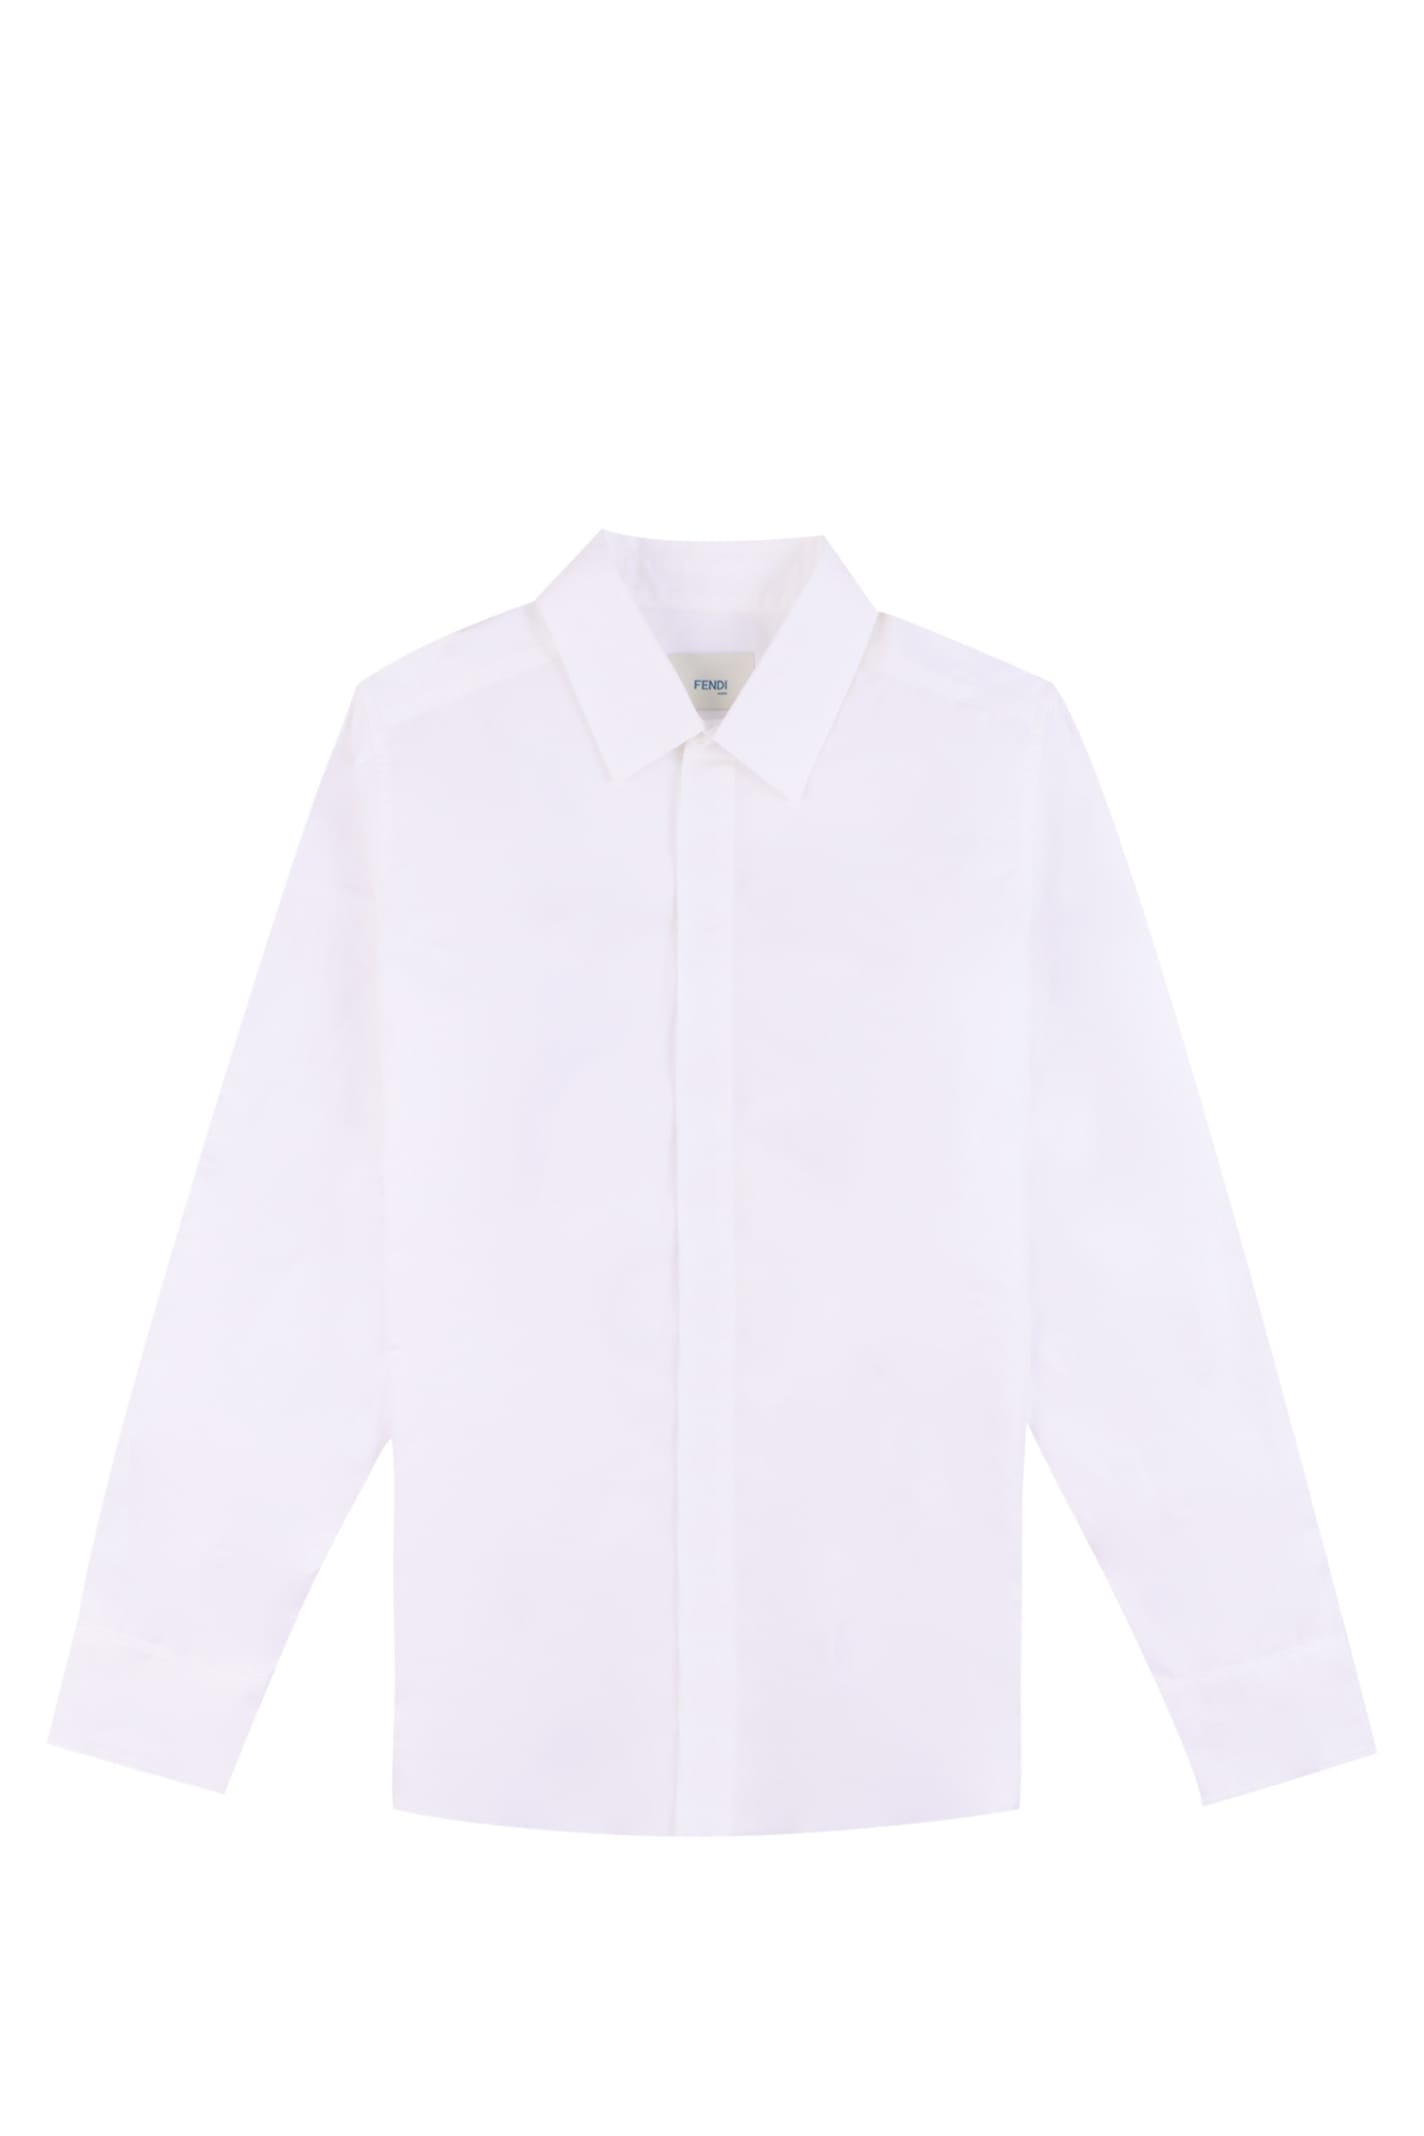 Fendi Kids' Cotton Shirt In White